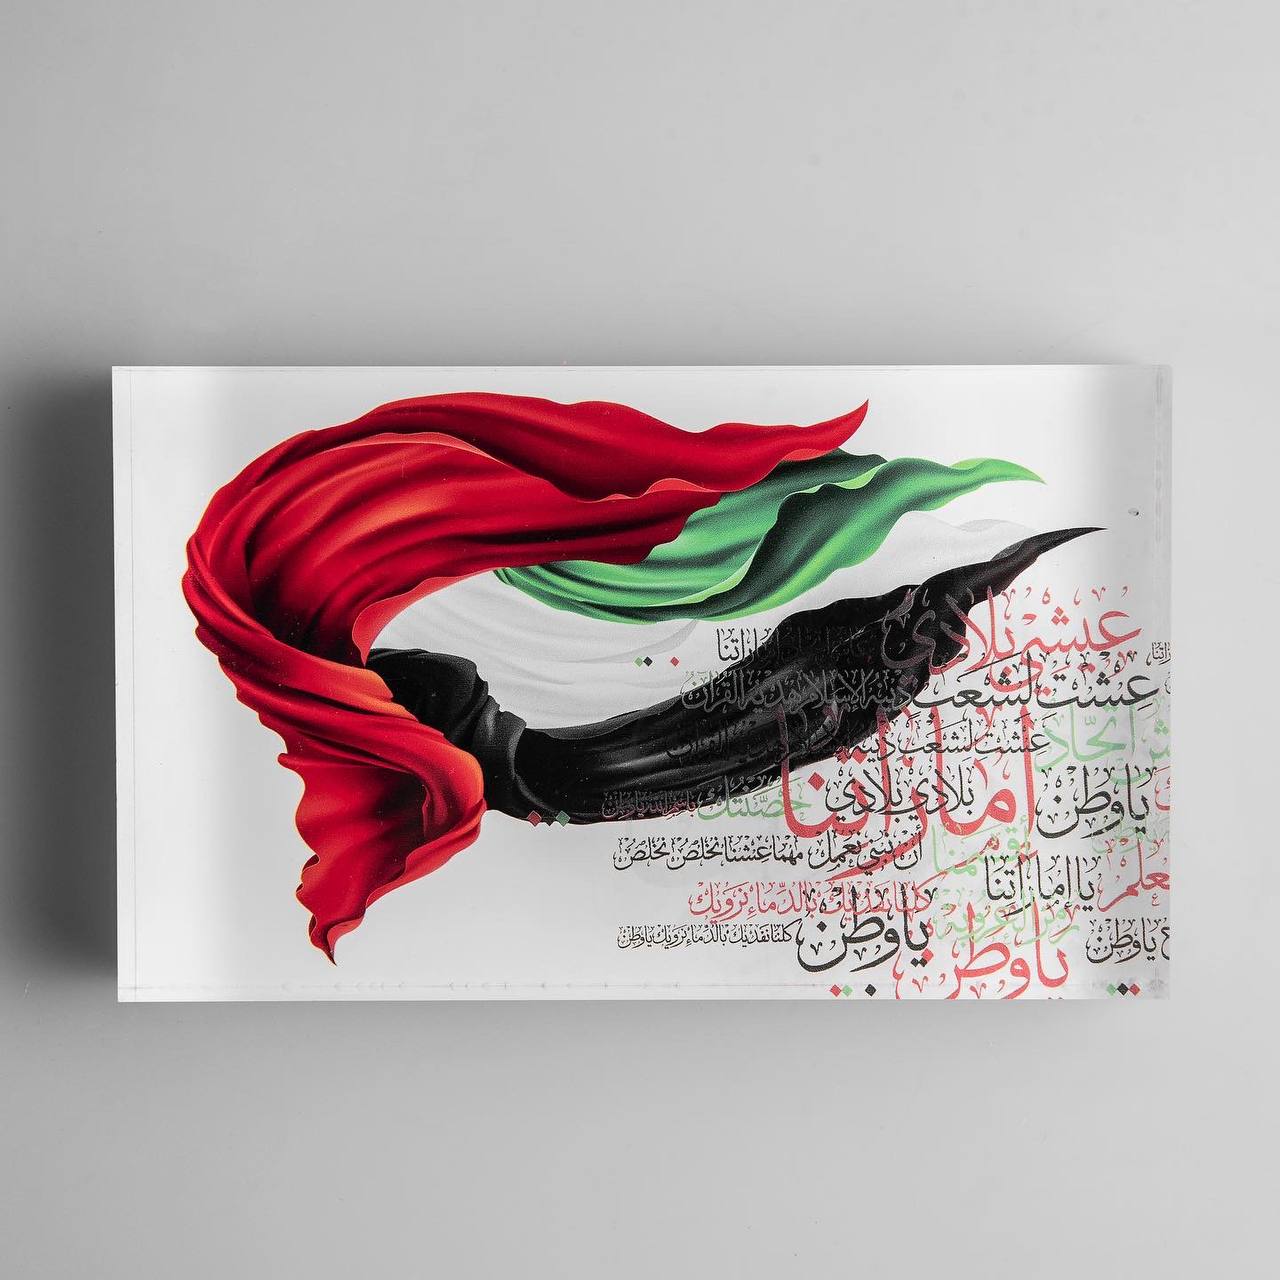 ROVATTI Acrylic Stand 2022 UAE Flag Day